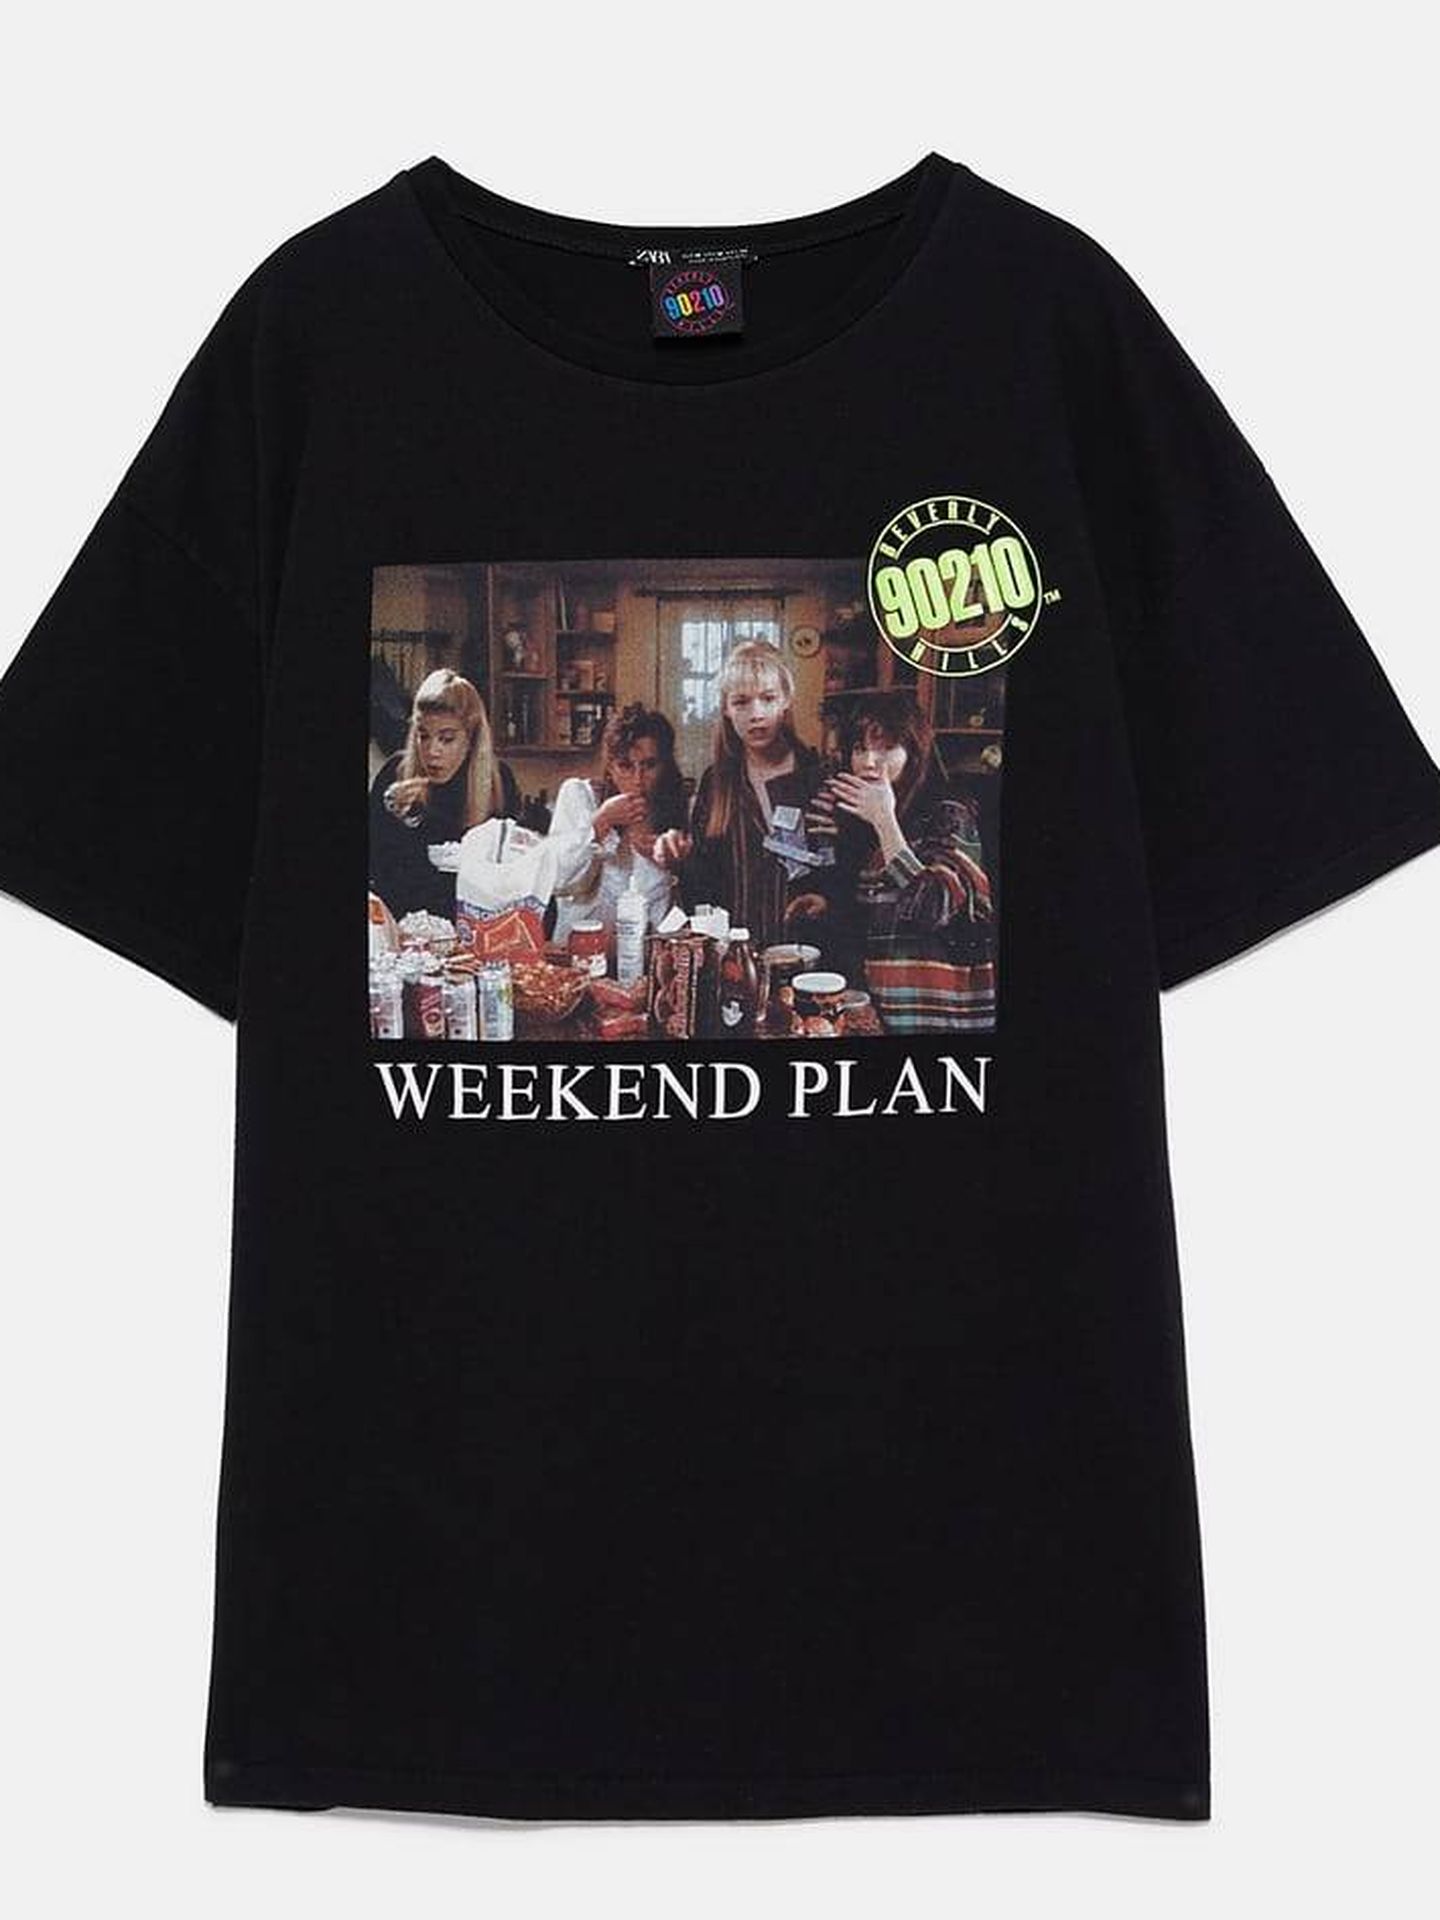 Camiseta en negro Weekend Plan, 12,95 euros. (Zara)